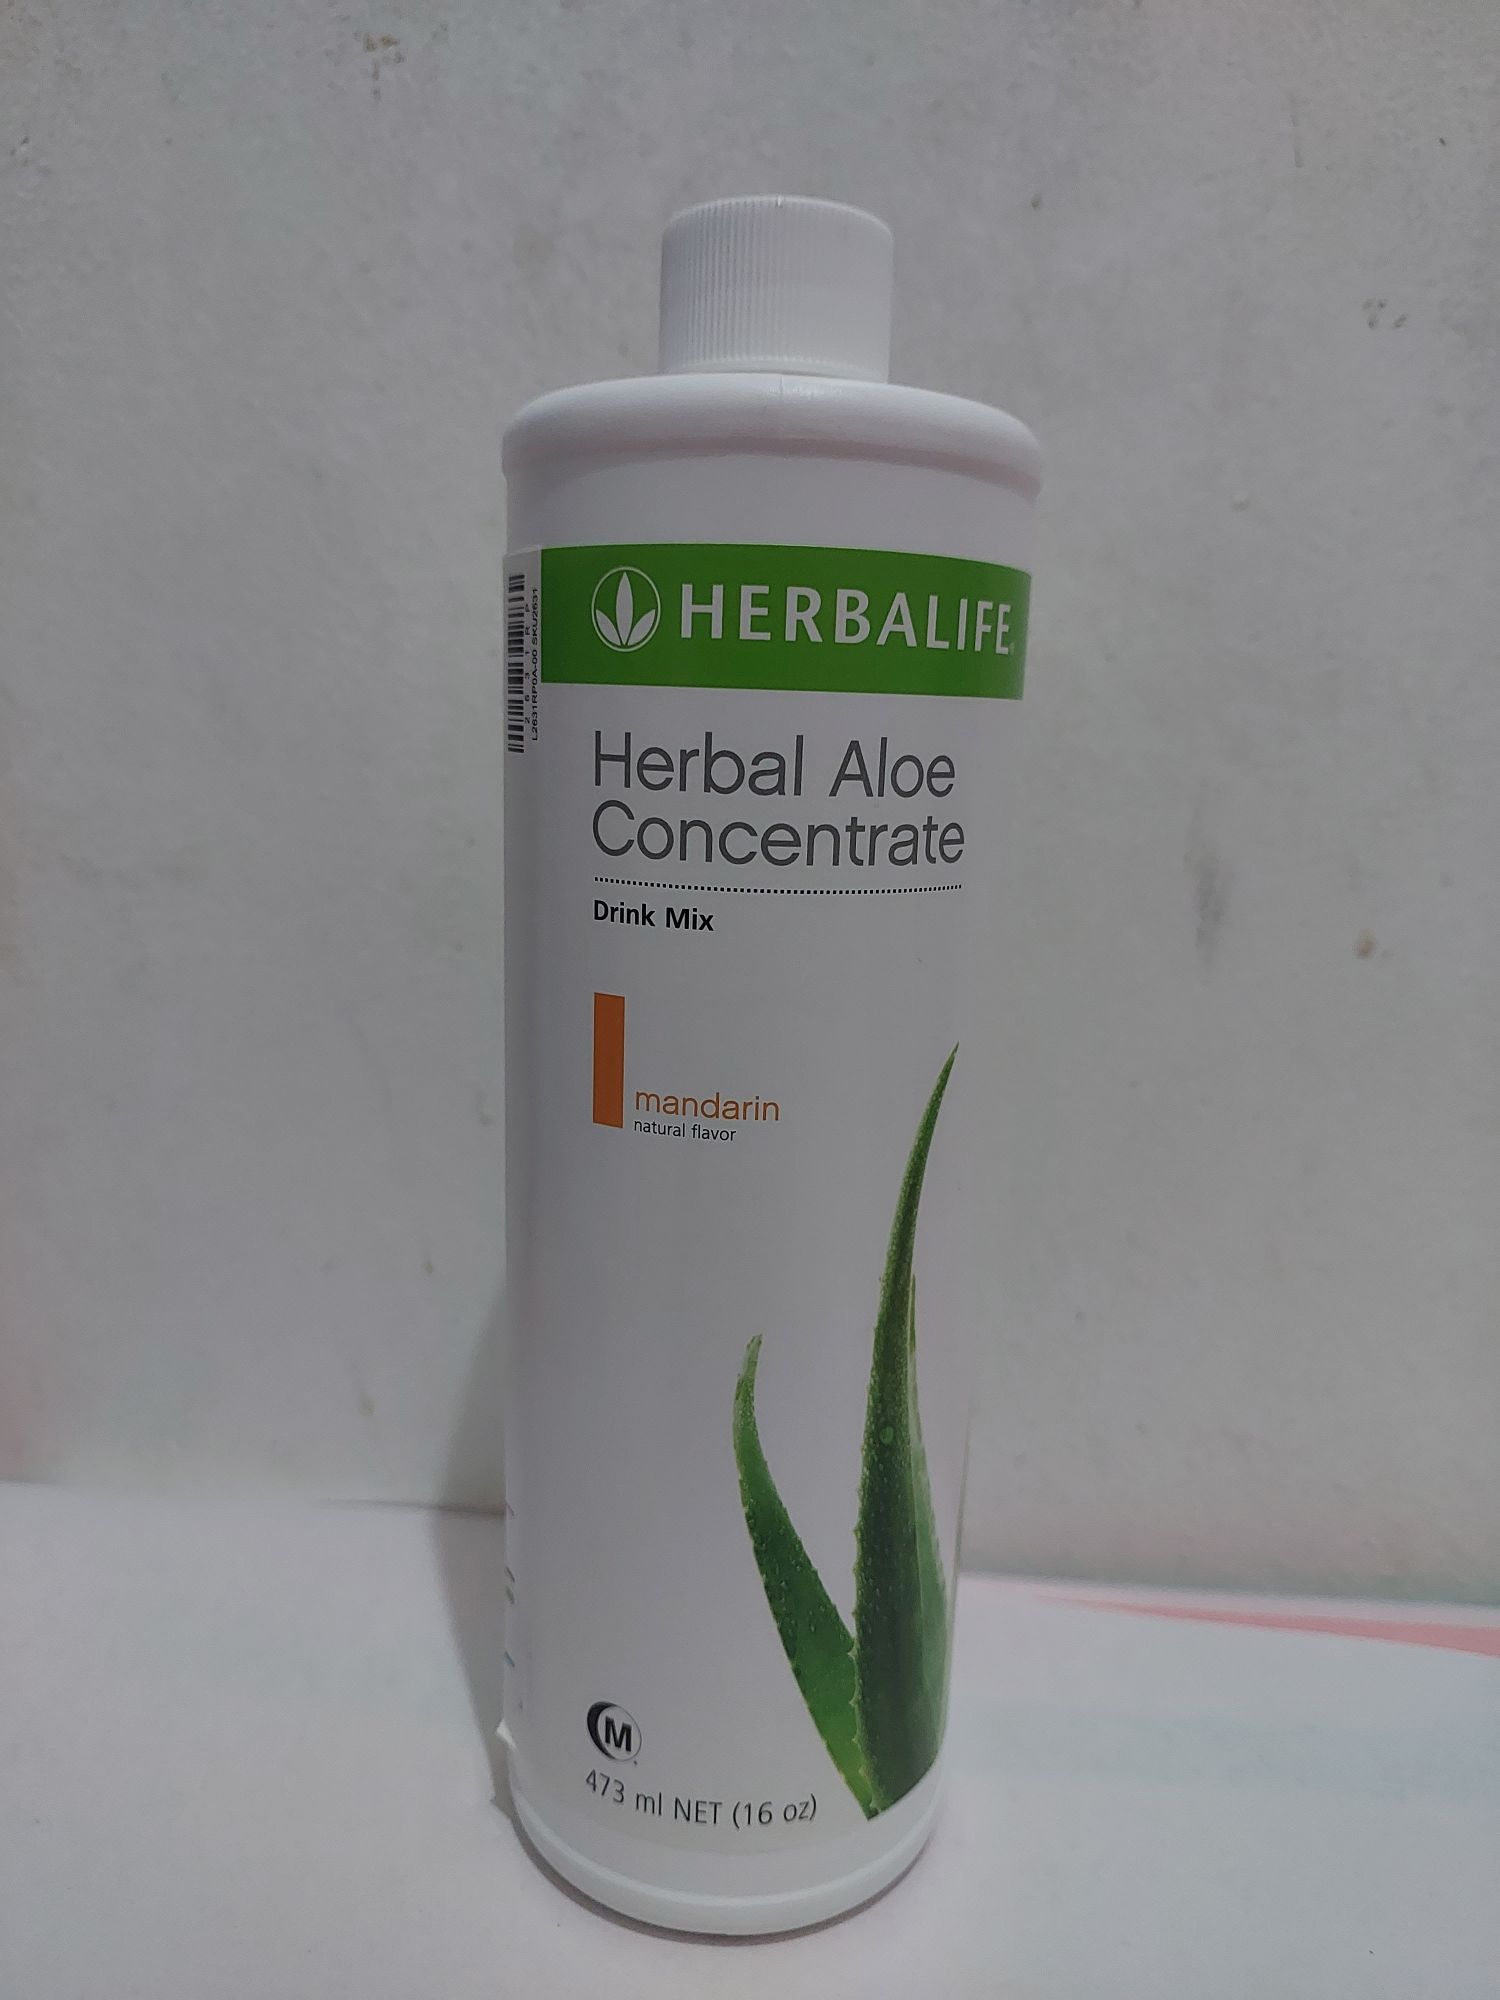 Herbalife Herbal Aloe Concentrate Mandarin Lazada Ph 9585